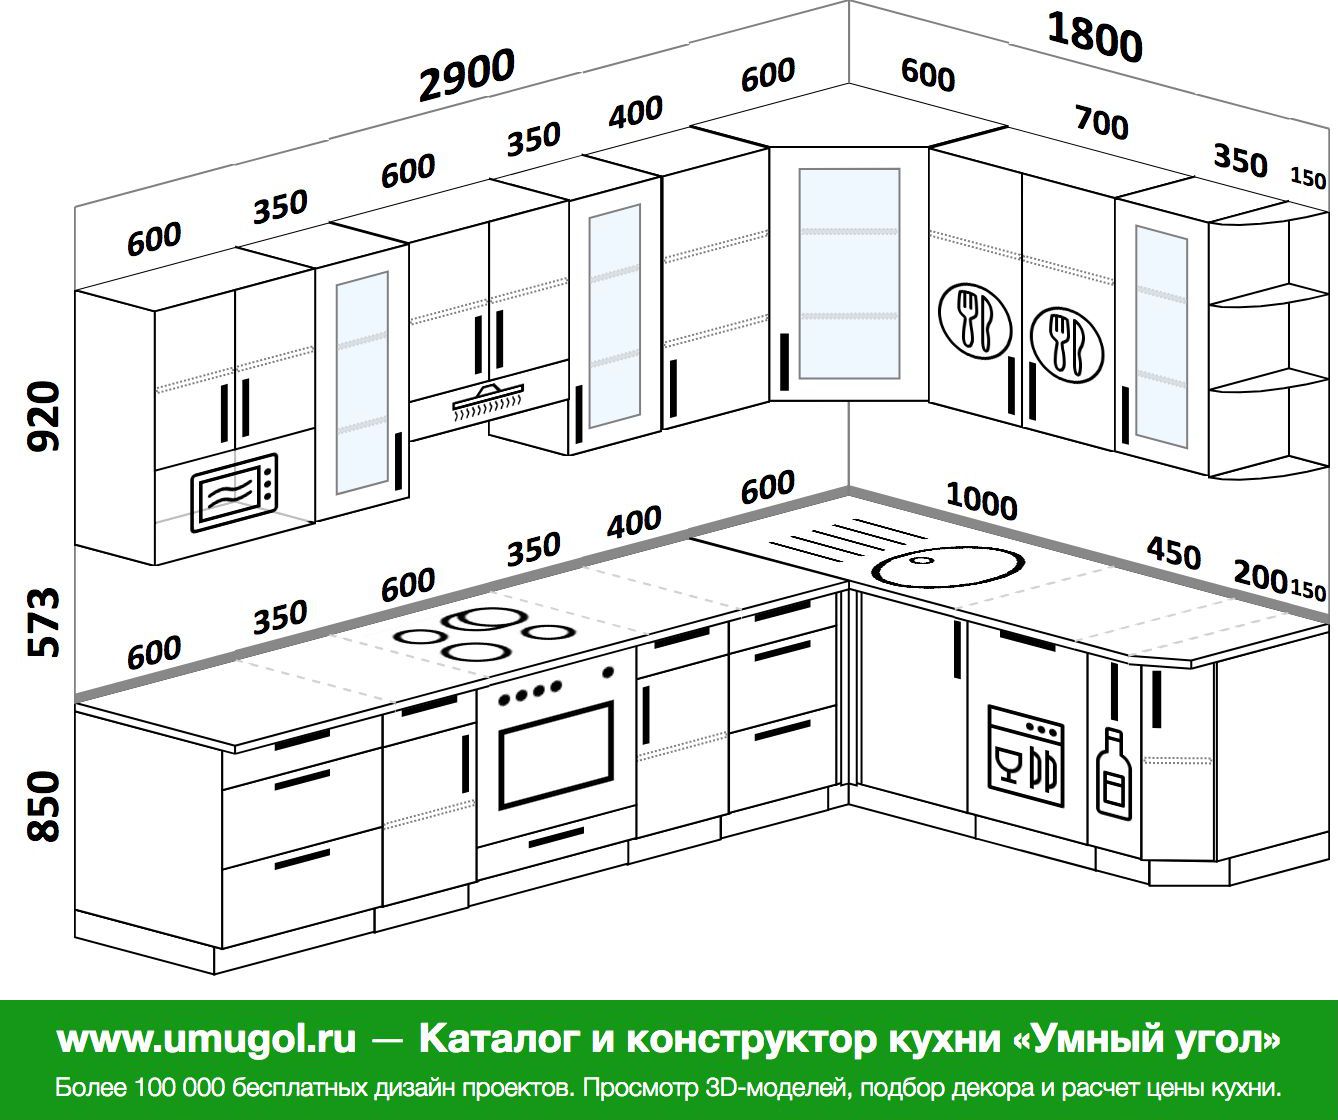 угловая кухня 1300 на 1300